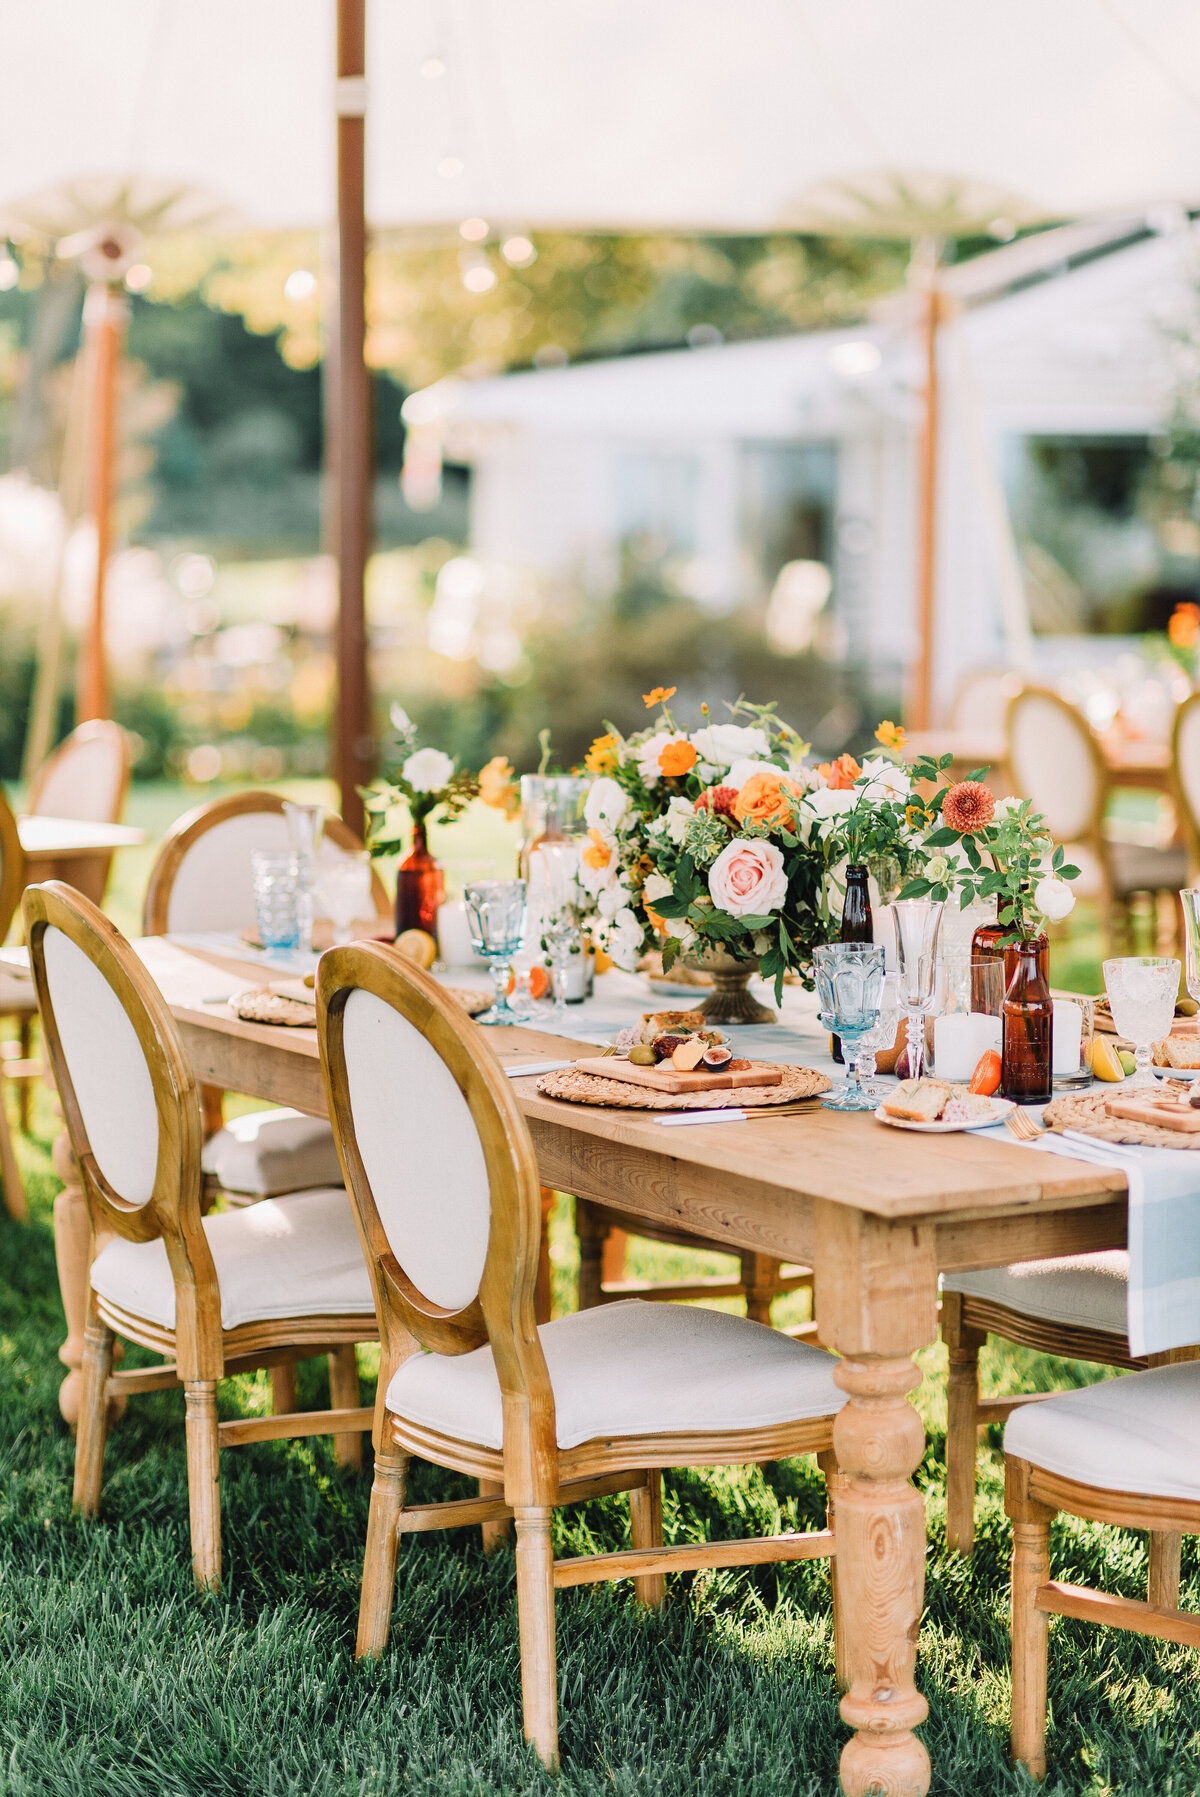 Sunny floral wedding table decor.